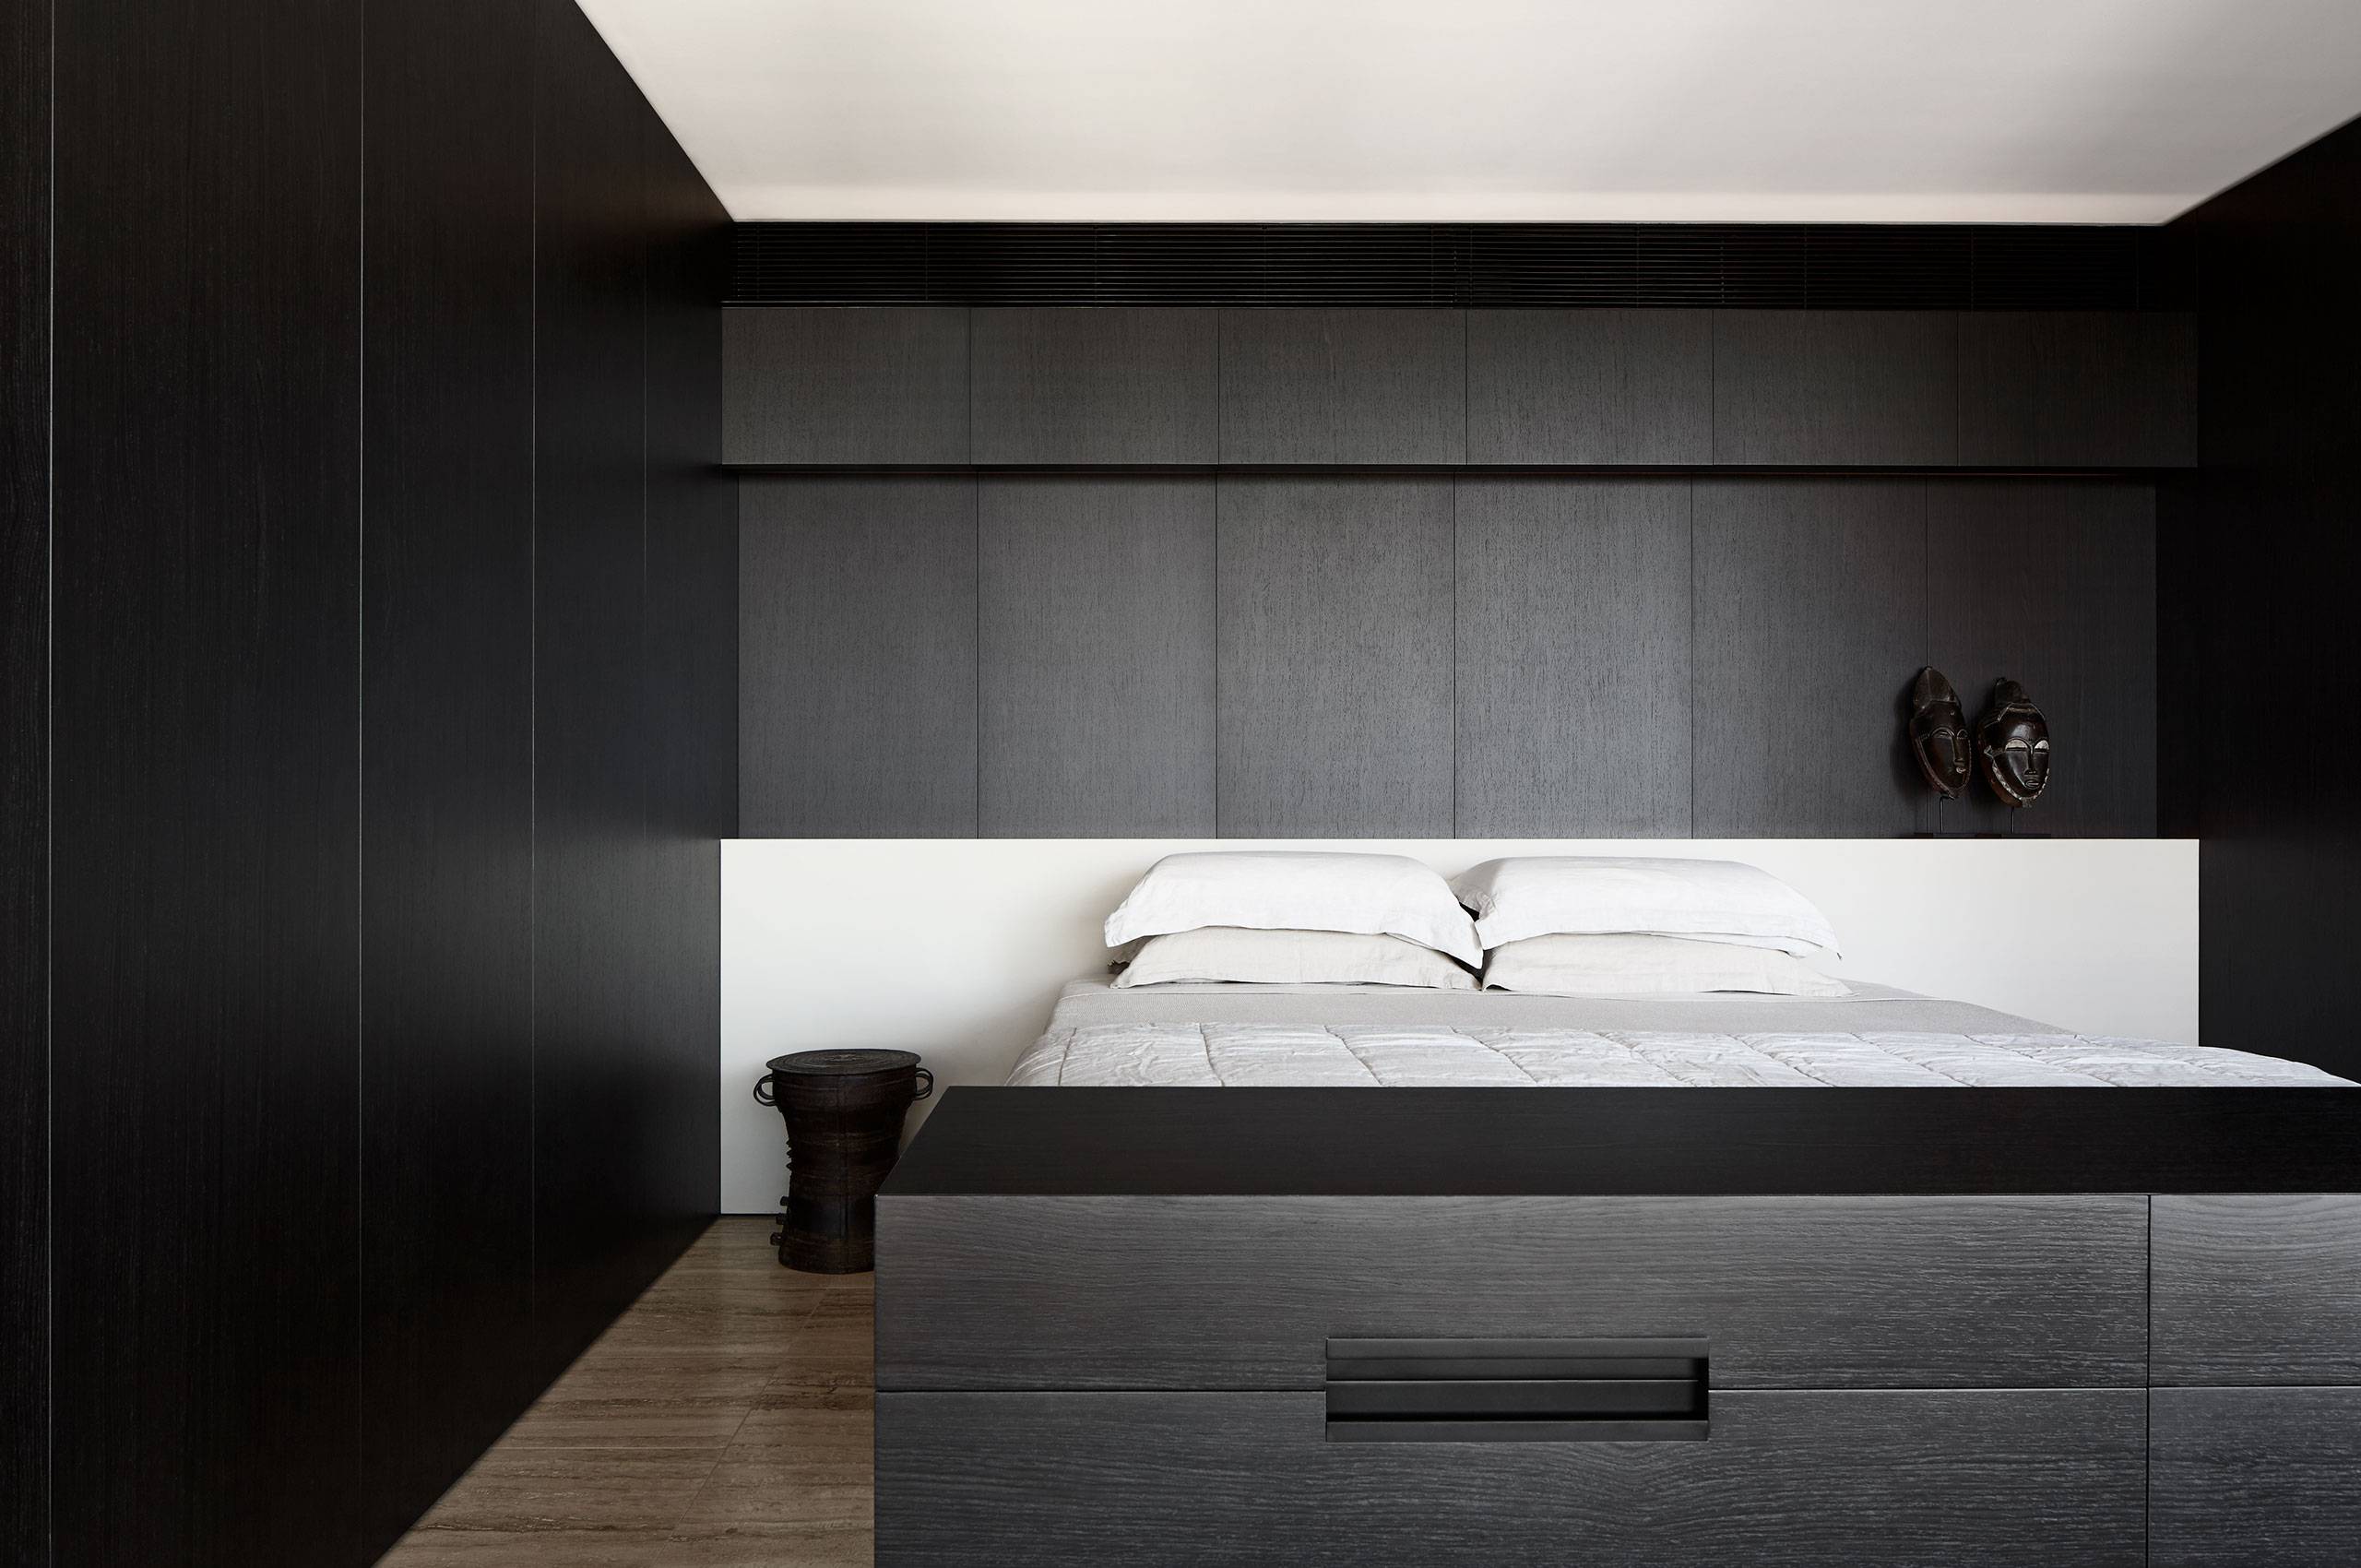 黑白灰色碰撞将卧室格调拉满，白色床头设计更显熠熠生辉，令空间多了些雅致雅致韵味。